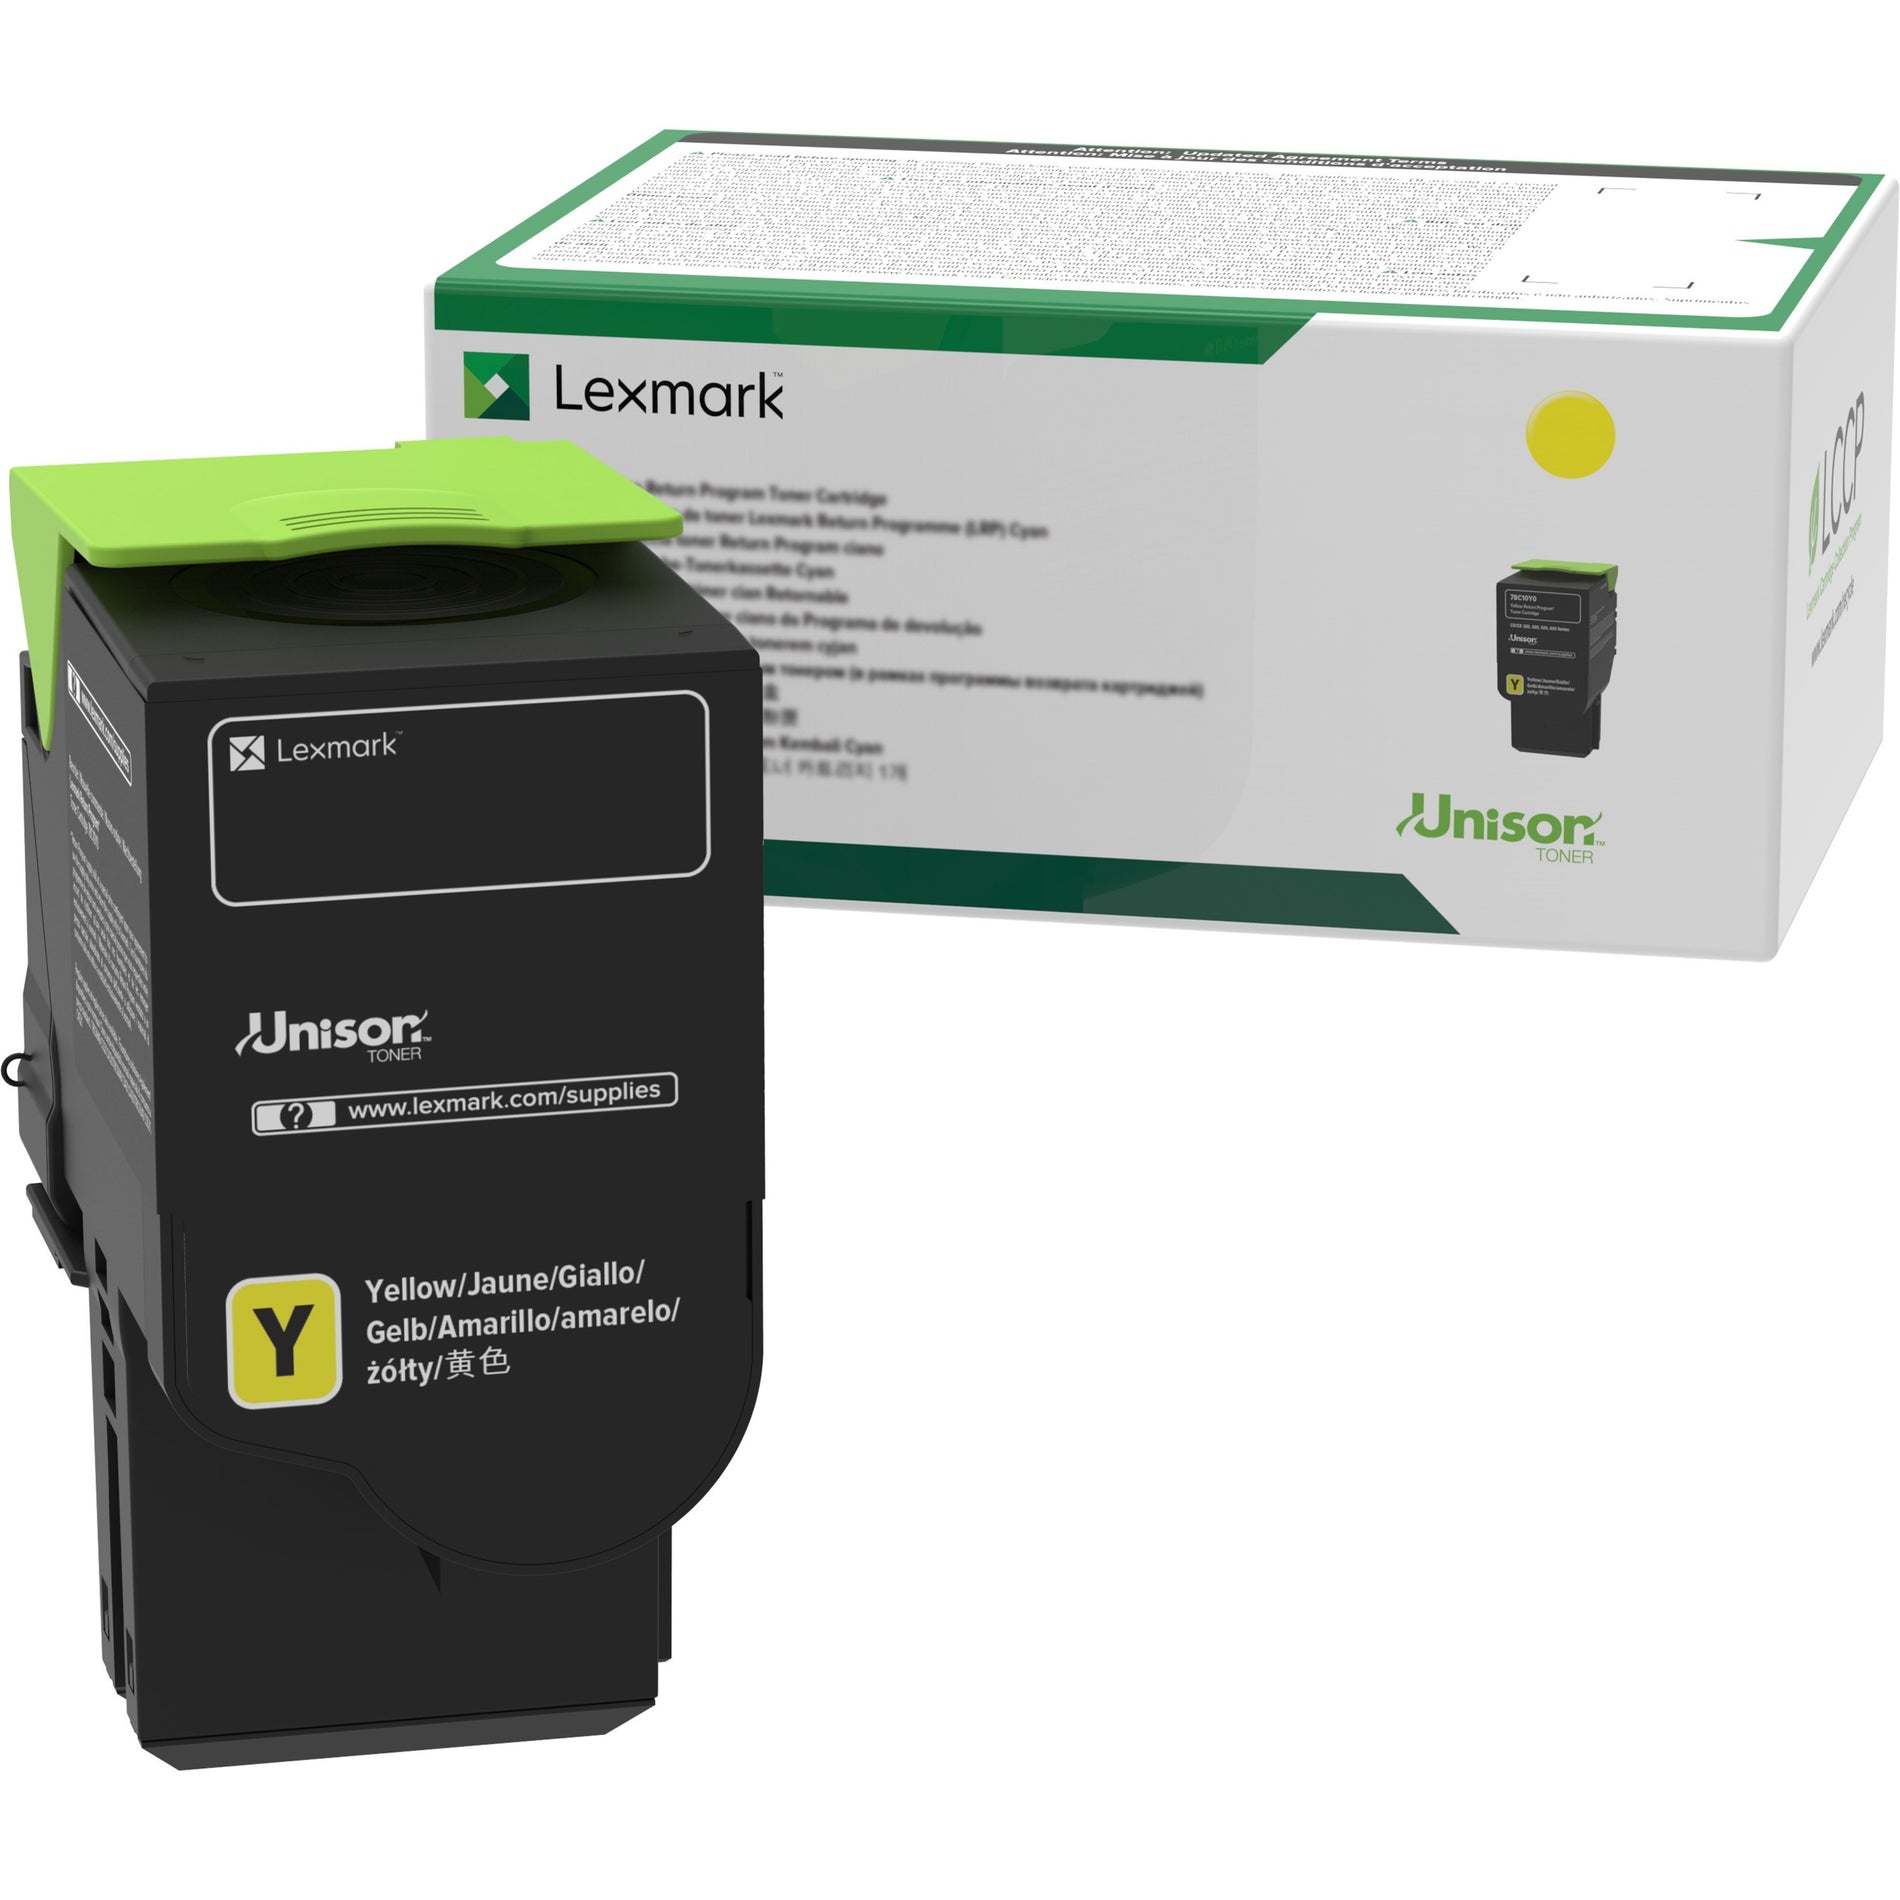 Lexmark 78C1UY0 黄色 超高产量 退货计划 打印机墨盒 7000页 列克玛品牌